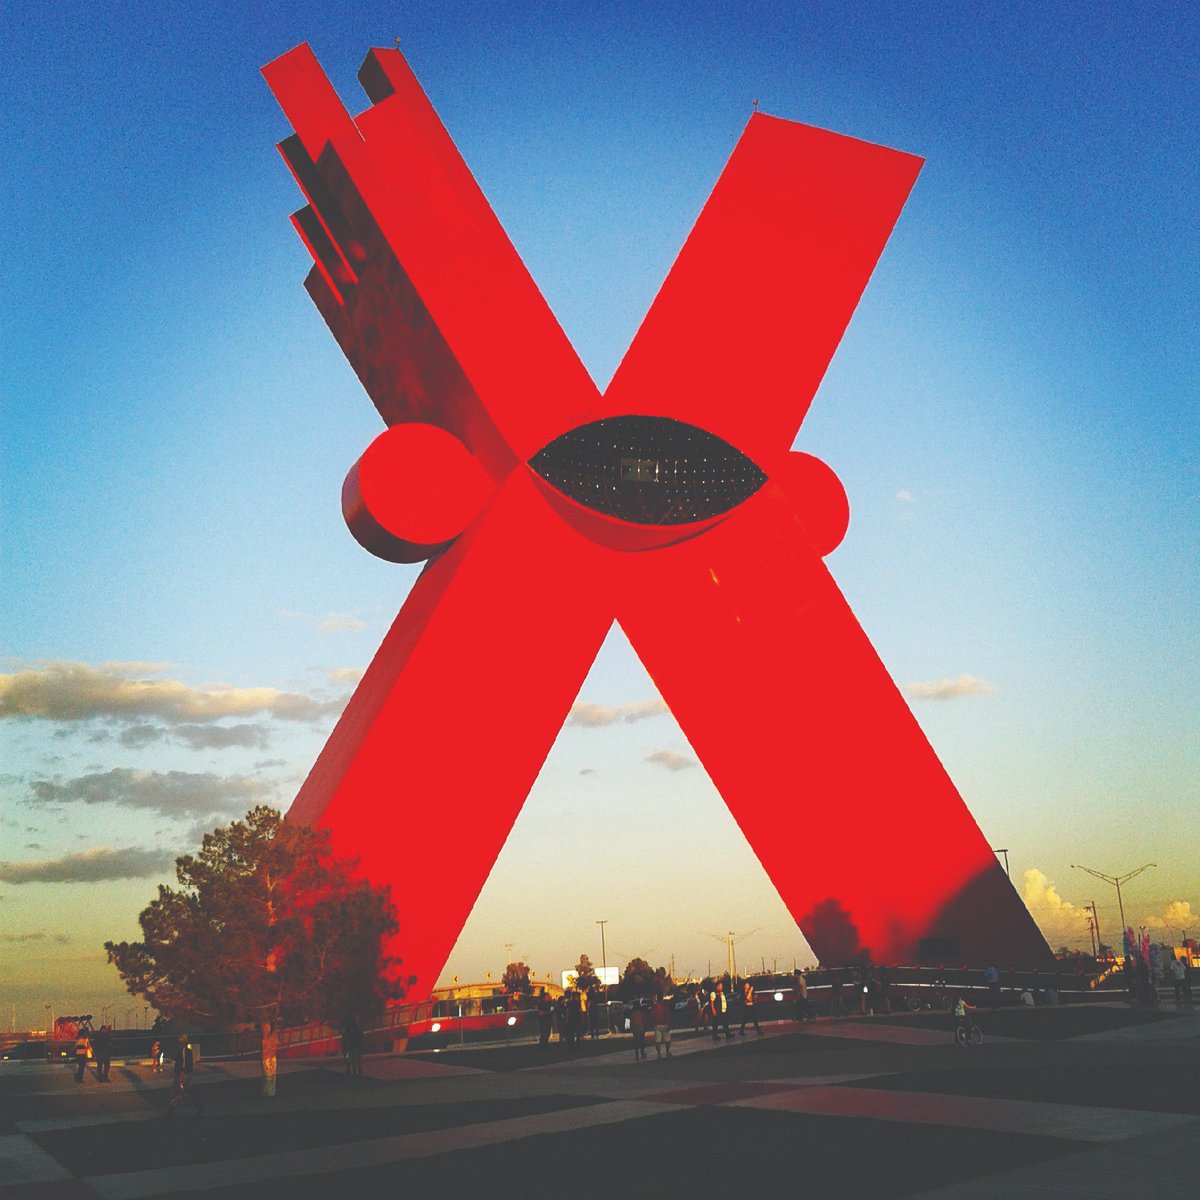 El #MonumentoALaMexicanidad Según el escultor #Sebastián, la “X” es símbolo del #mestizaje, el crisol de las culturas indígena y española de #Mexico @orgullosojuarez